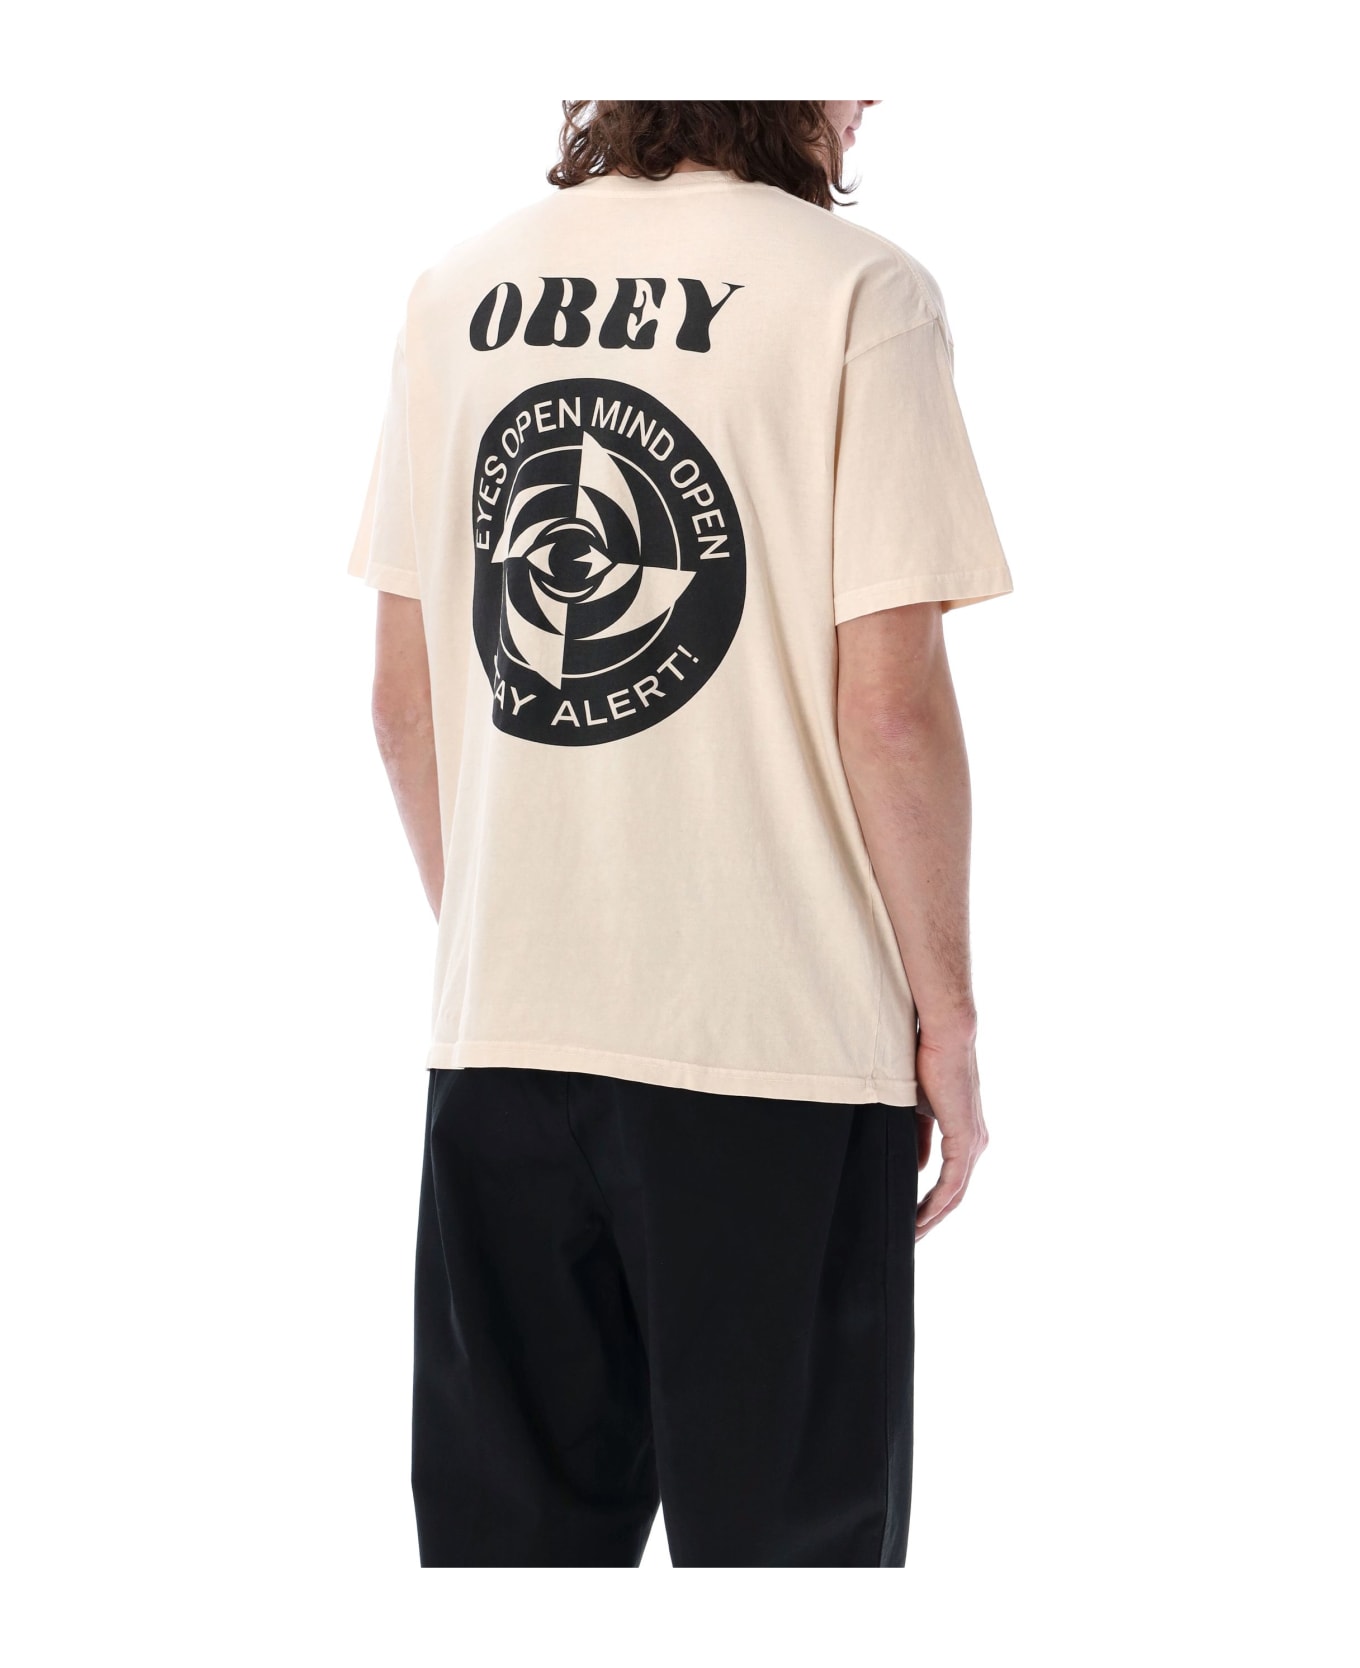 Obey Saty Alert Pigment T-shirt - PIGMENT SAGO シャツ